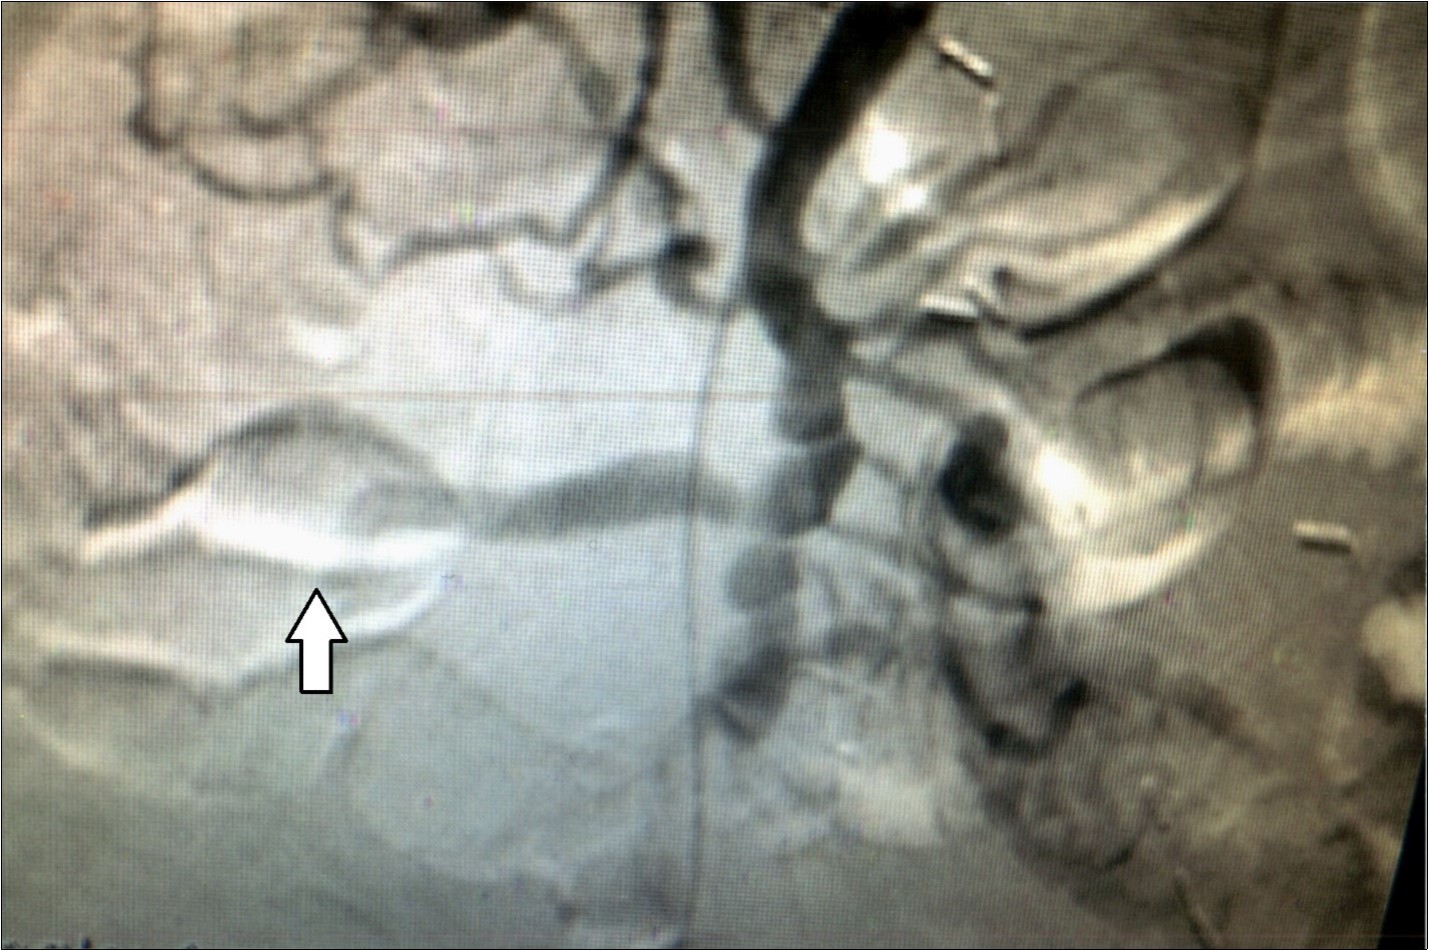  Case 2 – Superior Mesenteric Artery Branch Aneurysm.